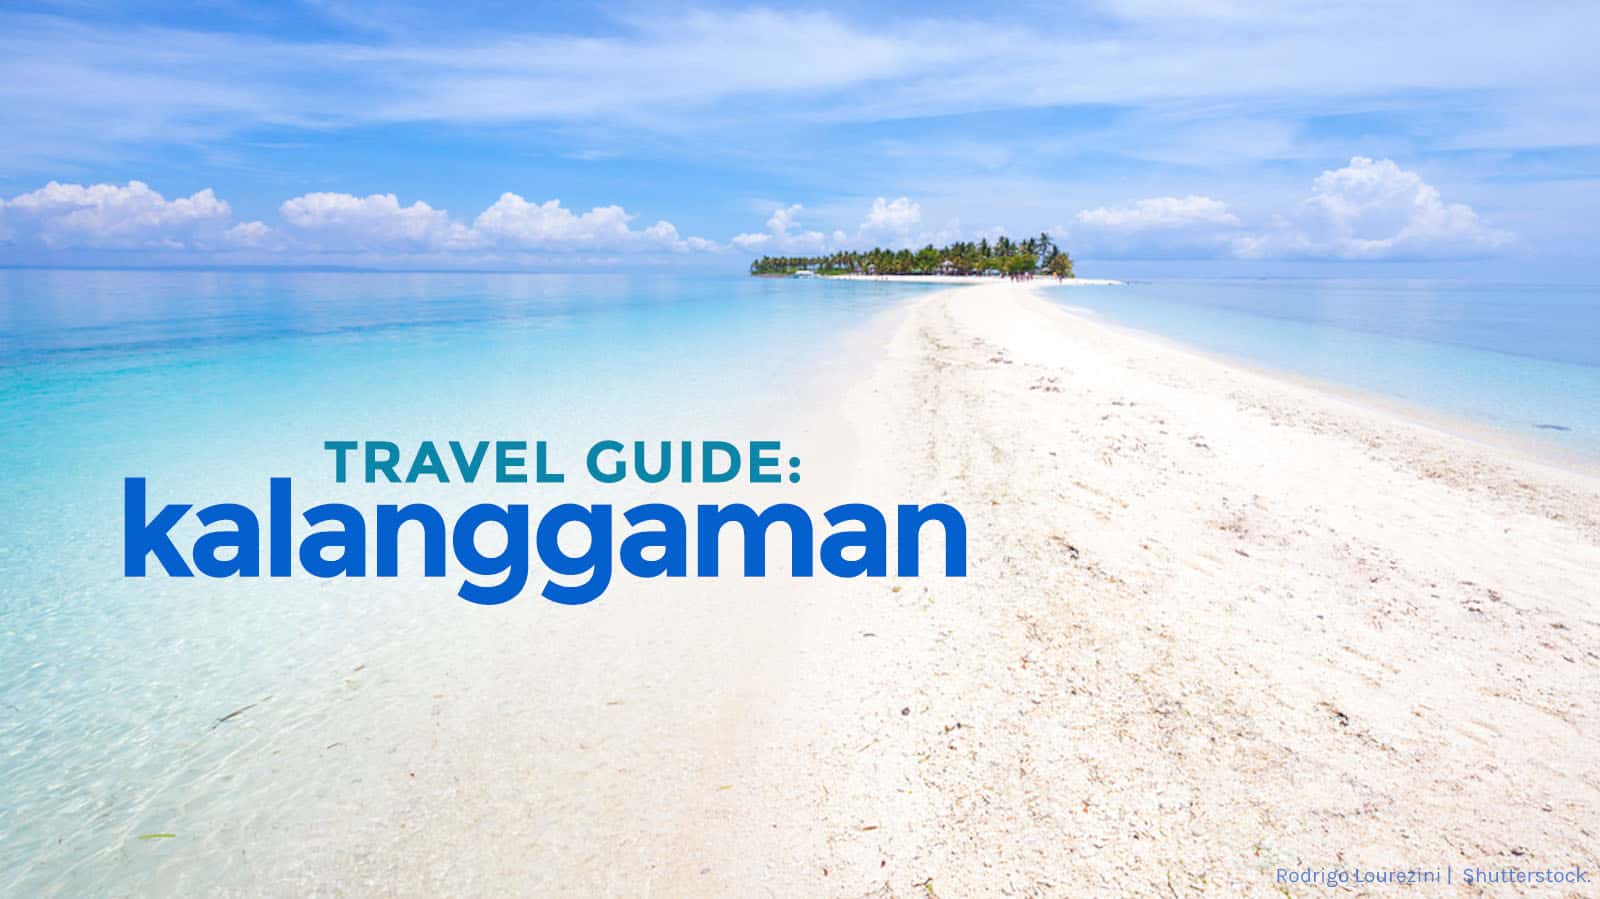 卡朗加曼岛旅游指南和行程:如何到达那里